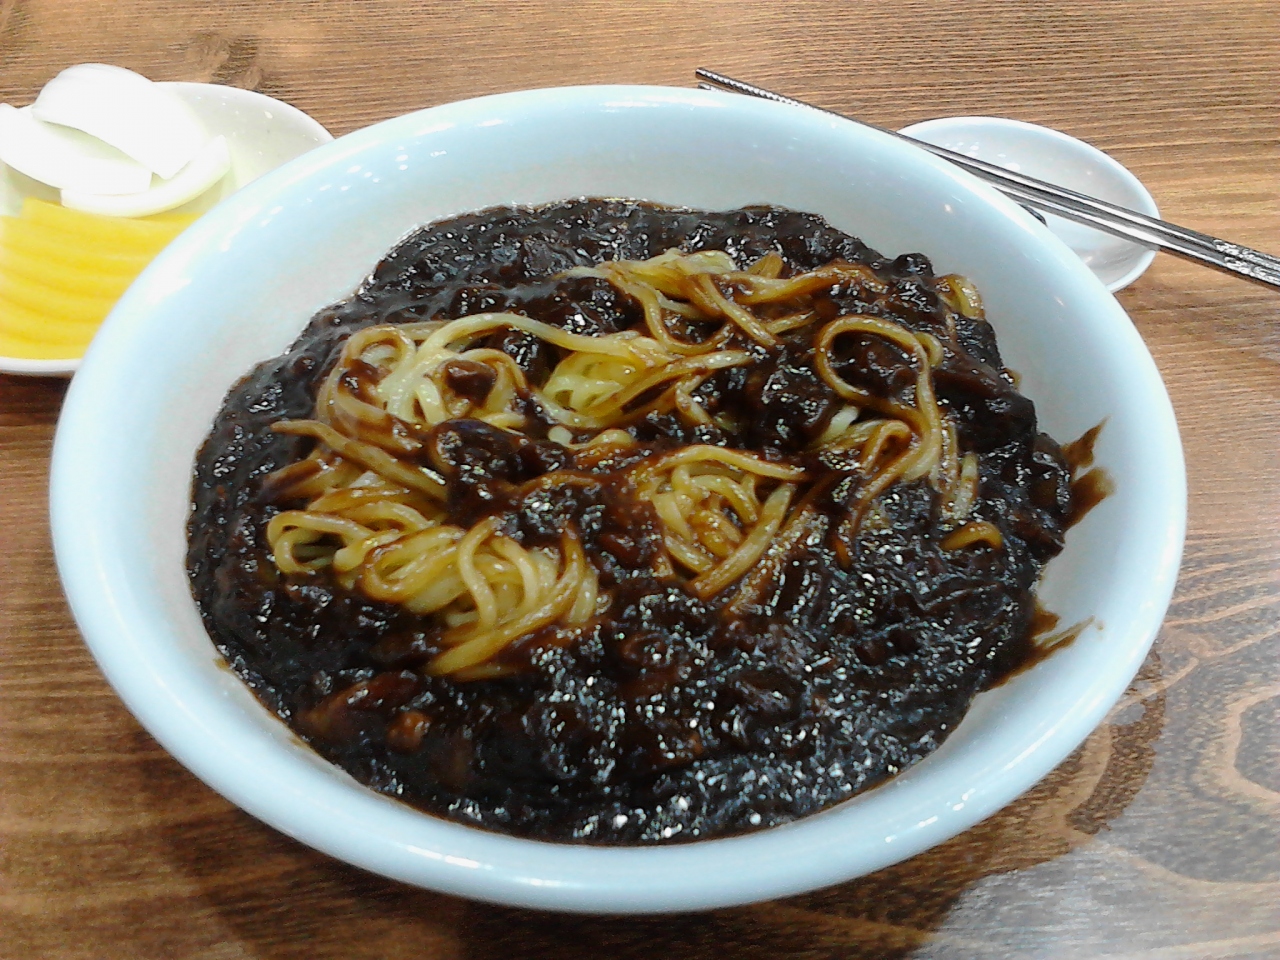 寒いのに またまたジャジャ麺かい 其の一 ソウル 韓国 の旅行記 ブログ By 暁のドライバーさん フォートラベル